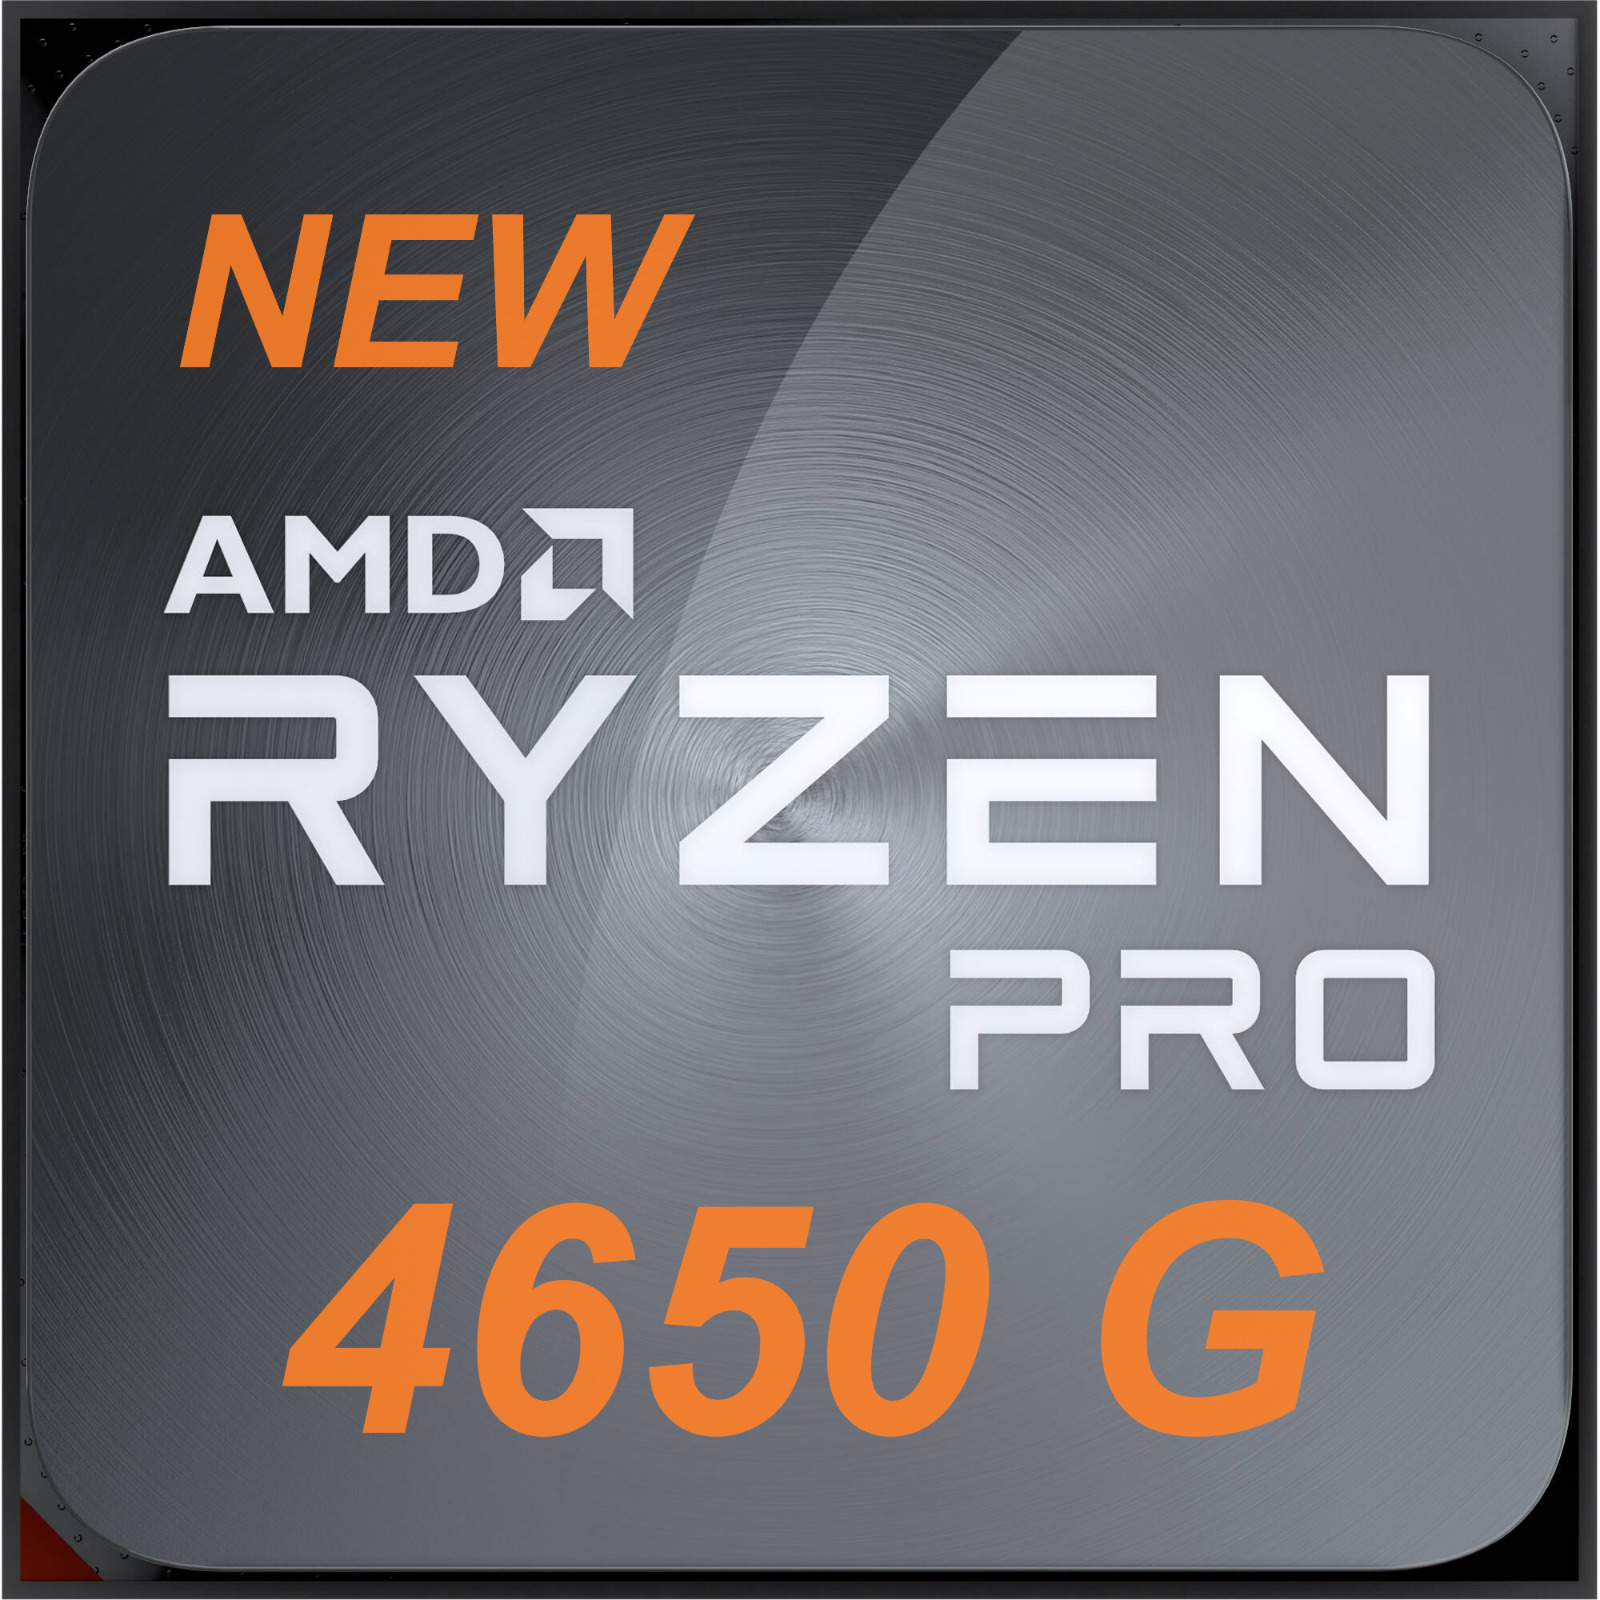 NEW - AMD Ryzen 5 PRO 4650G 3.7GHz 6-Cores Socket AM4 CPU Processor